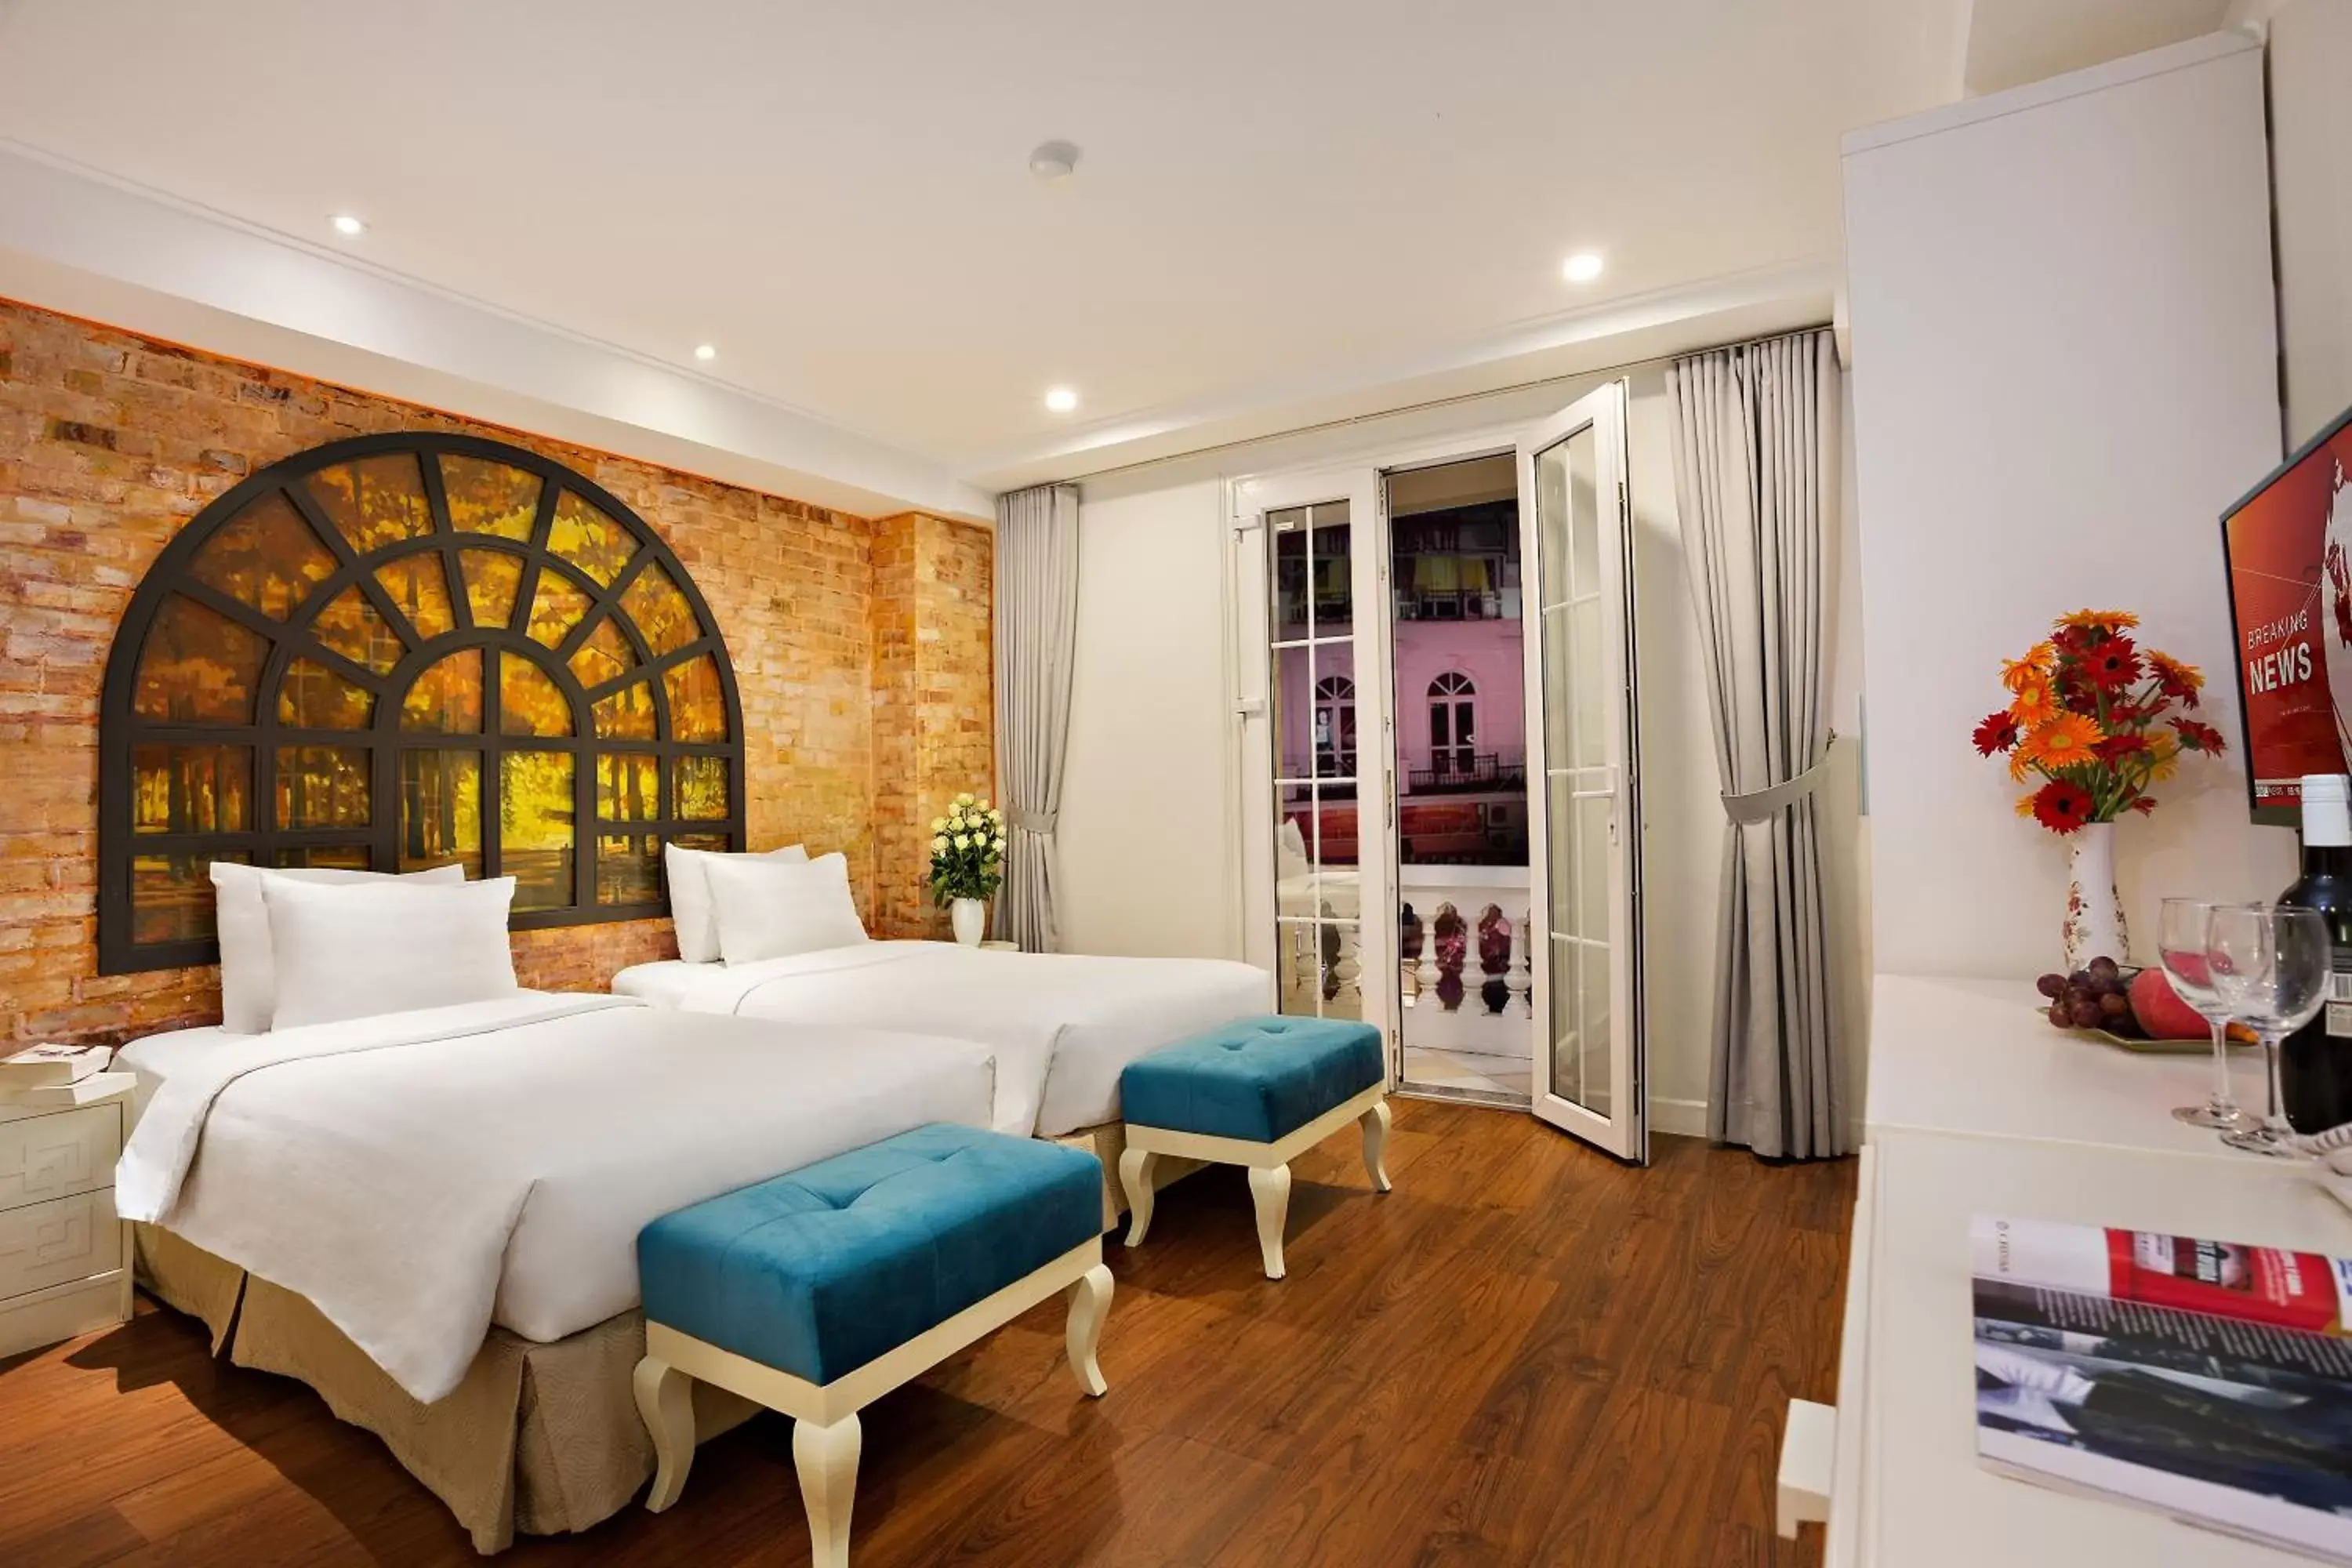 Bed, Room Photo in Hanoi La Selva Hotel